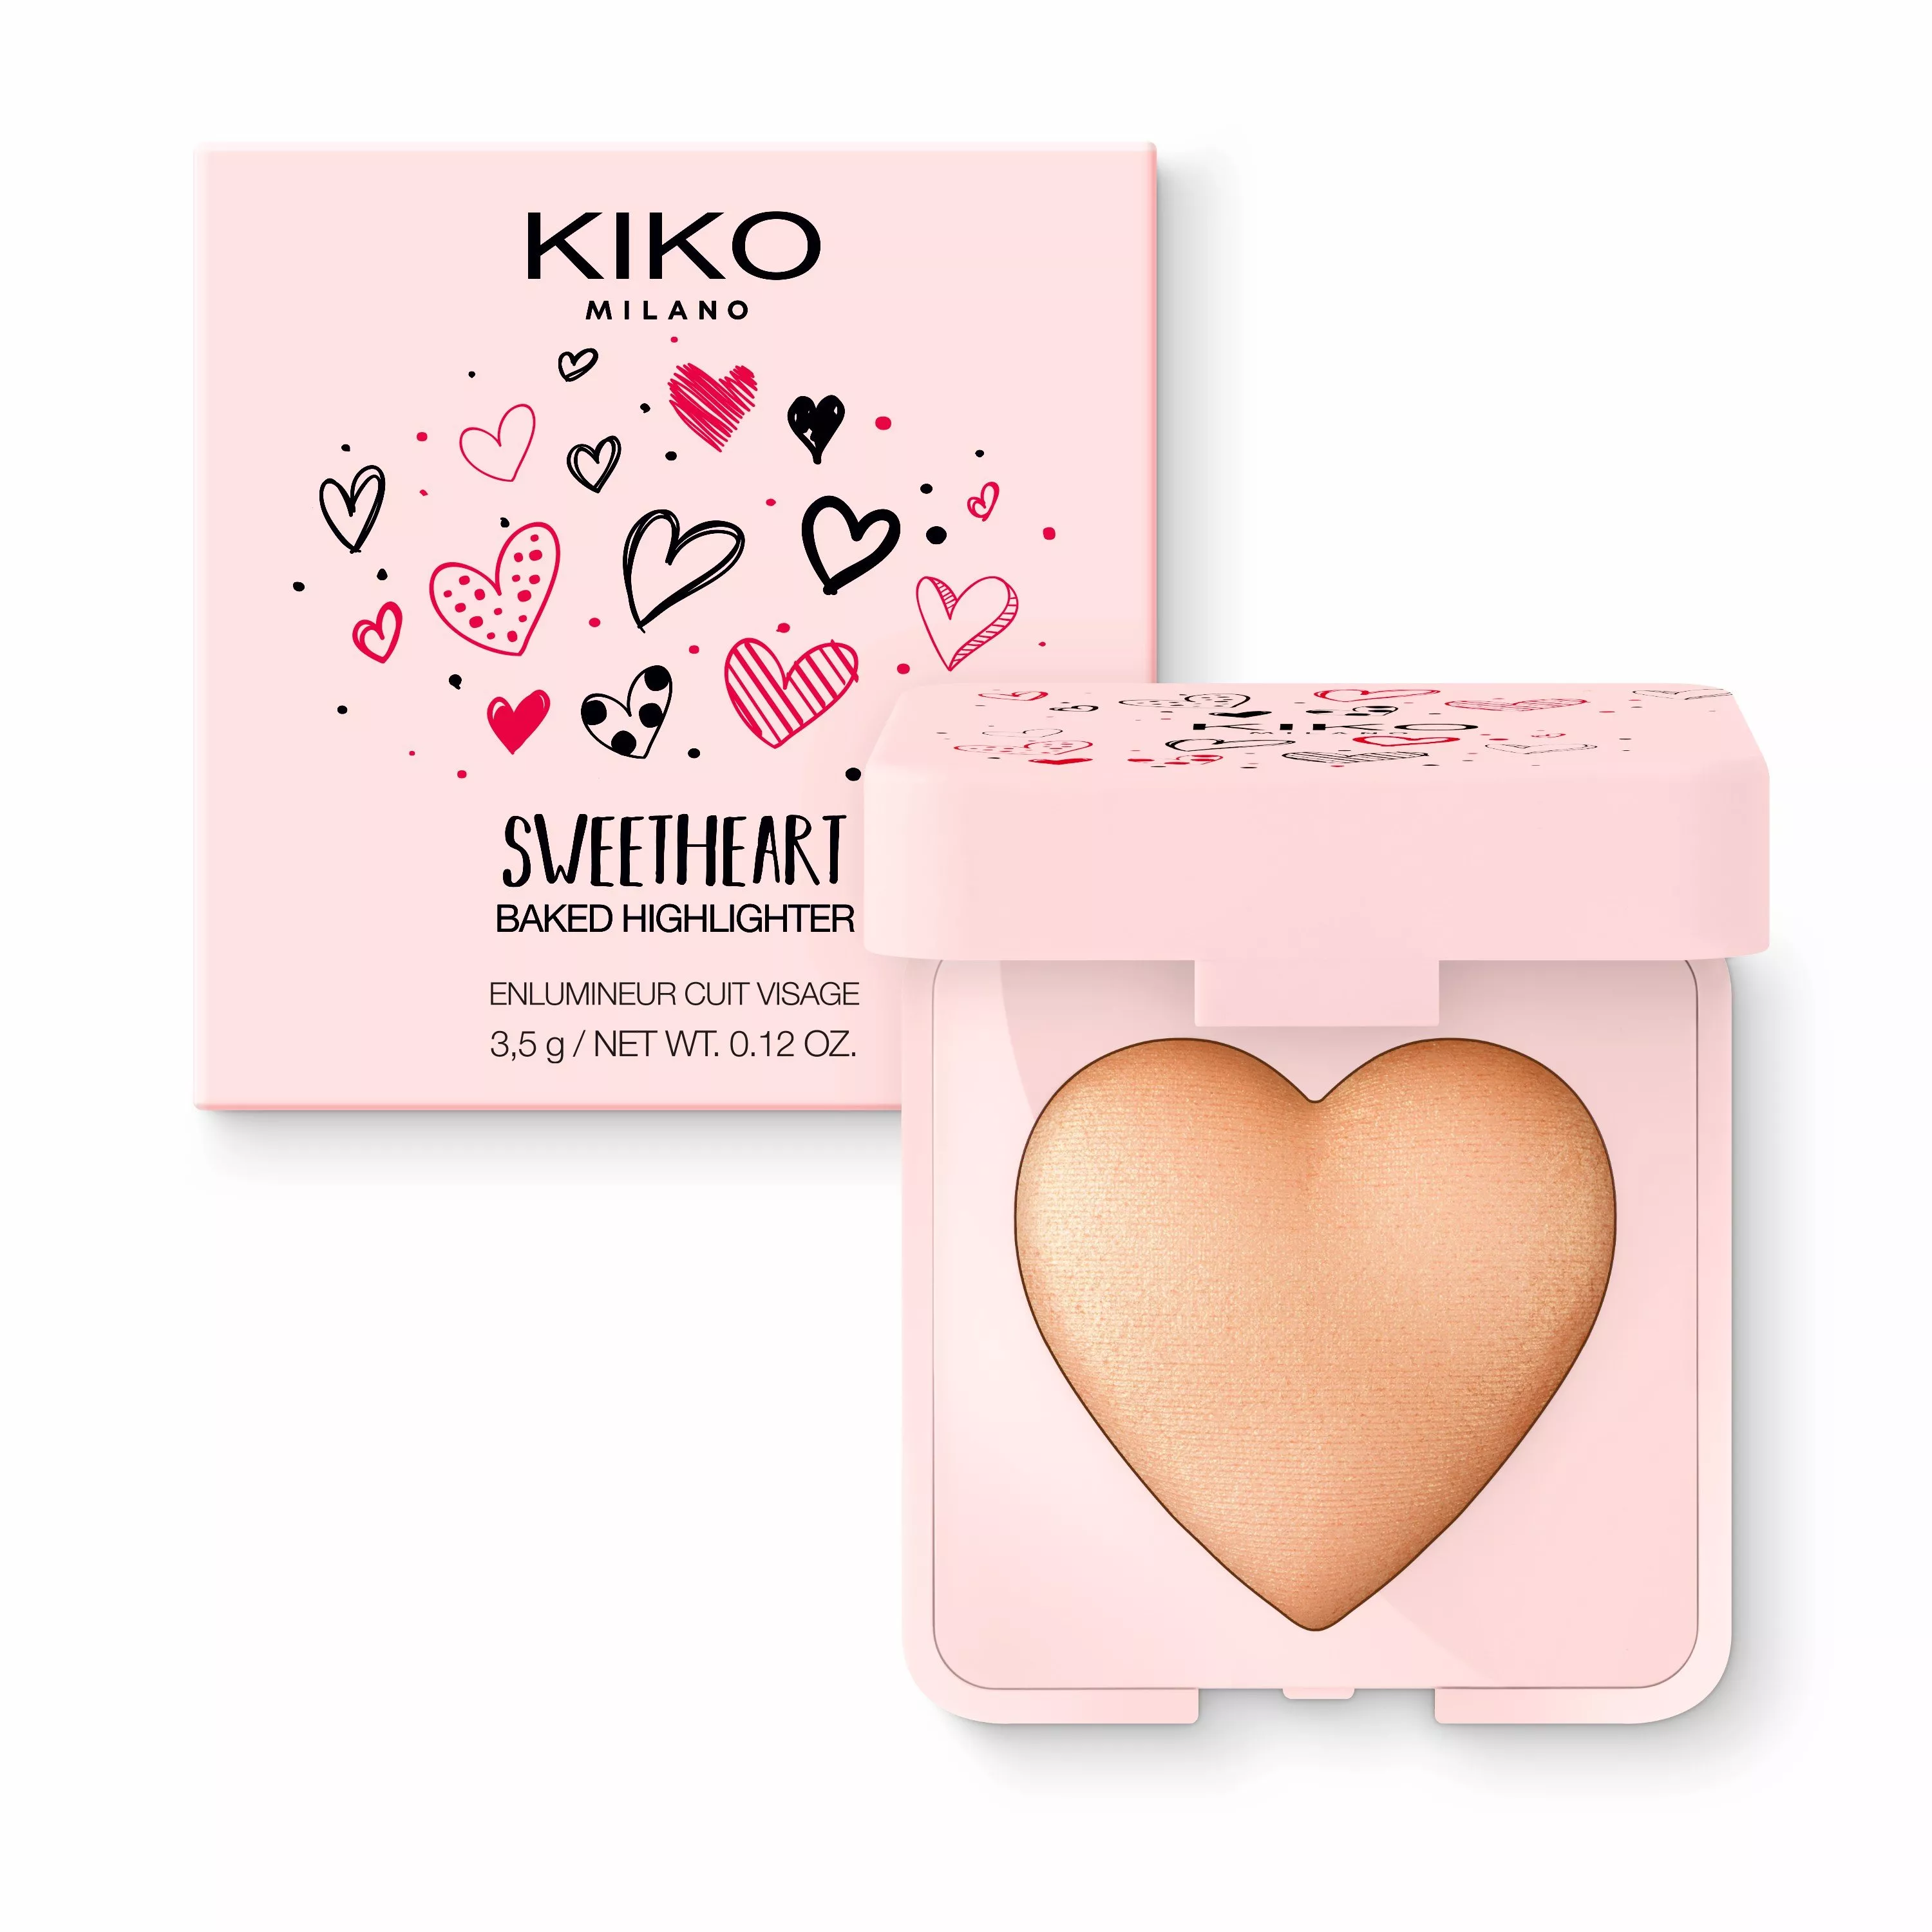 Kiko Milano تقدّم مجموعة Sweetheart الجديدة